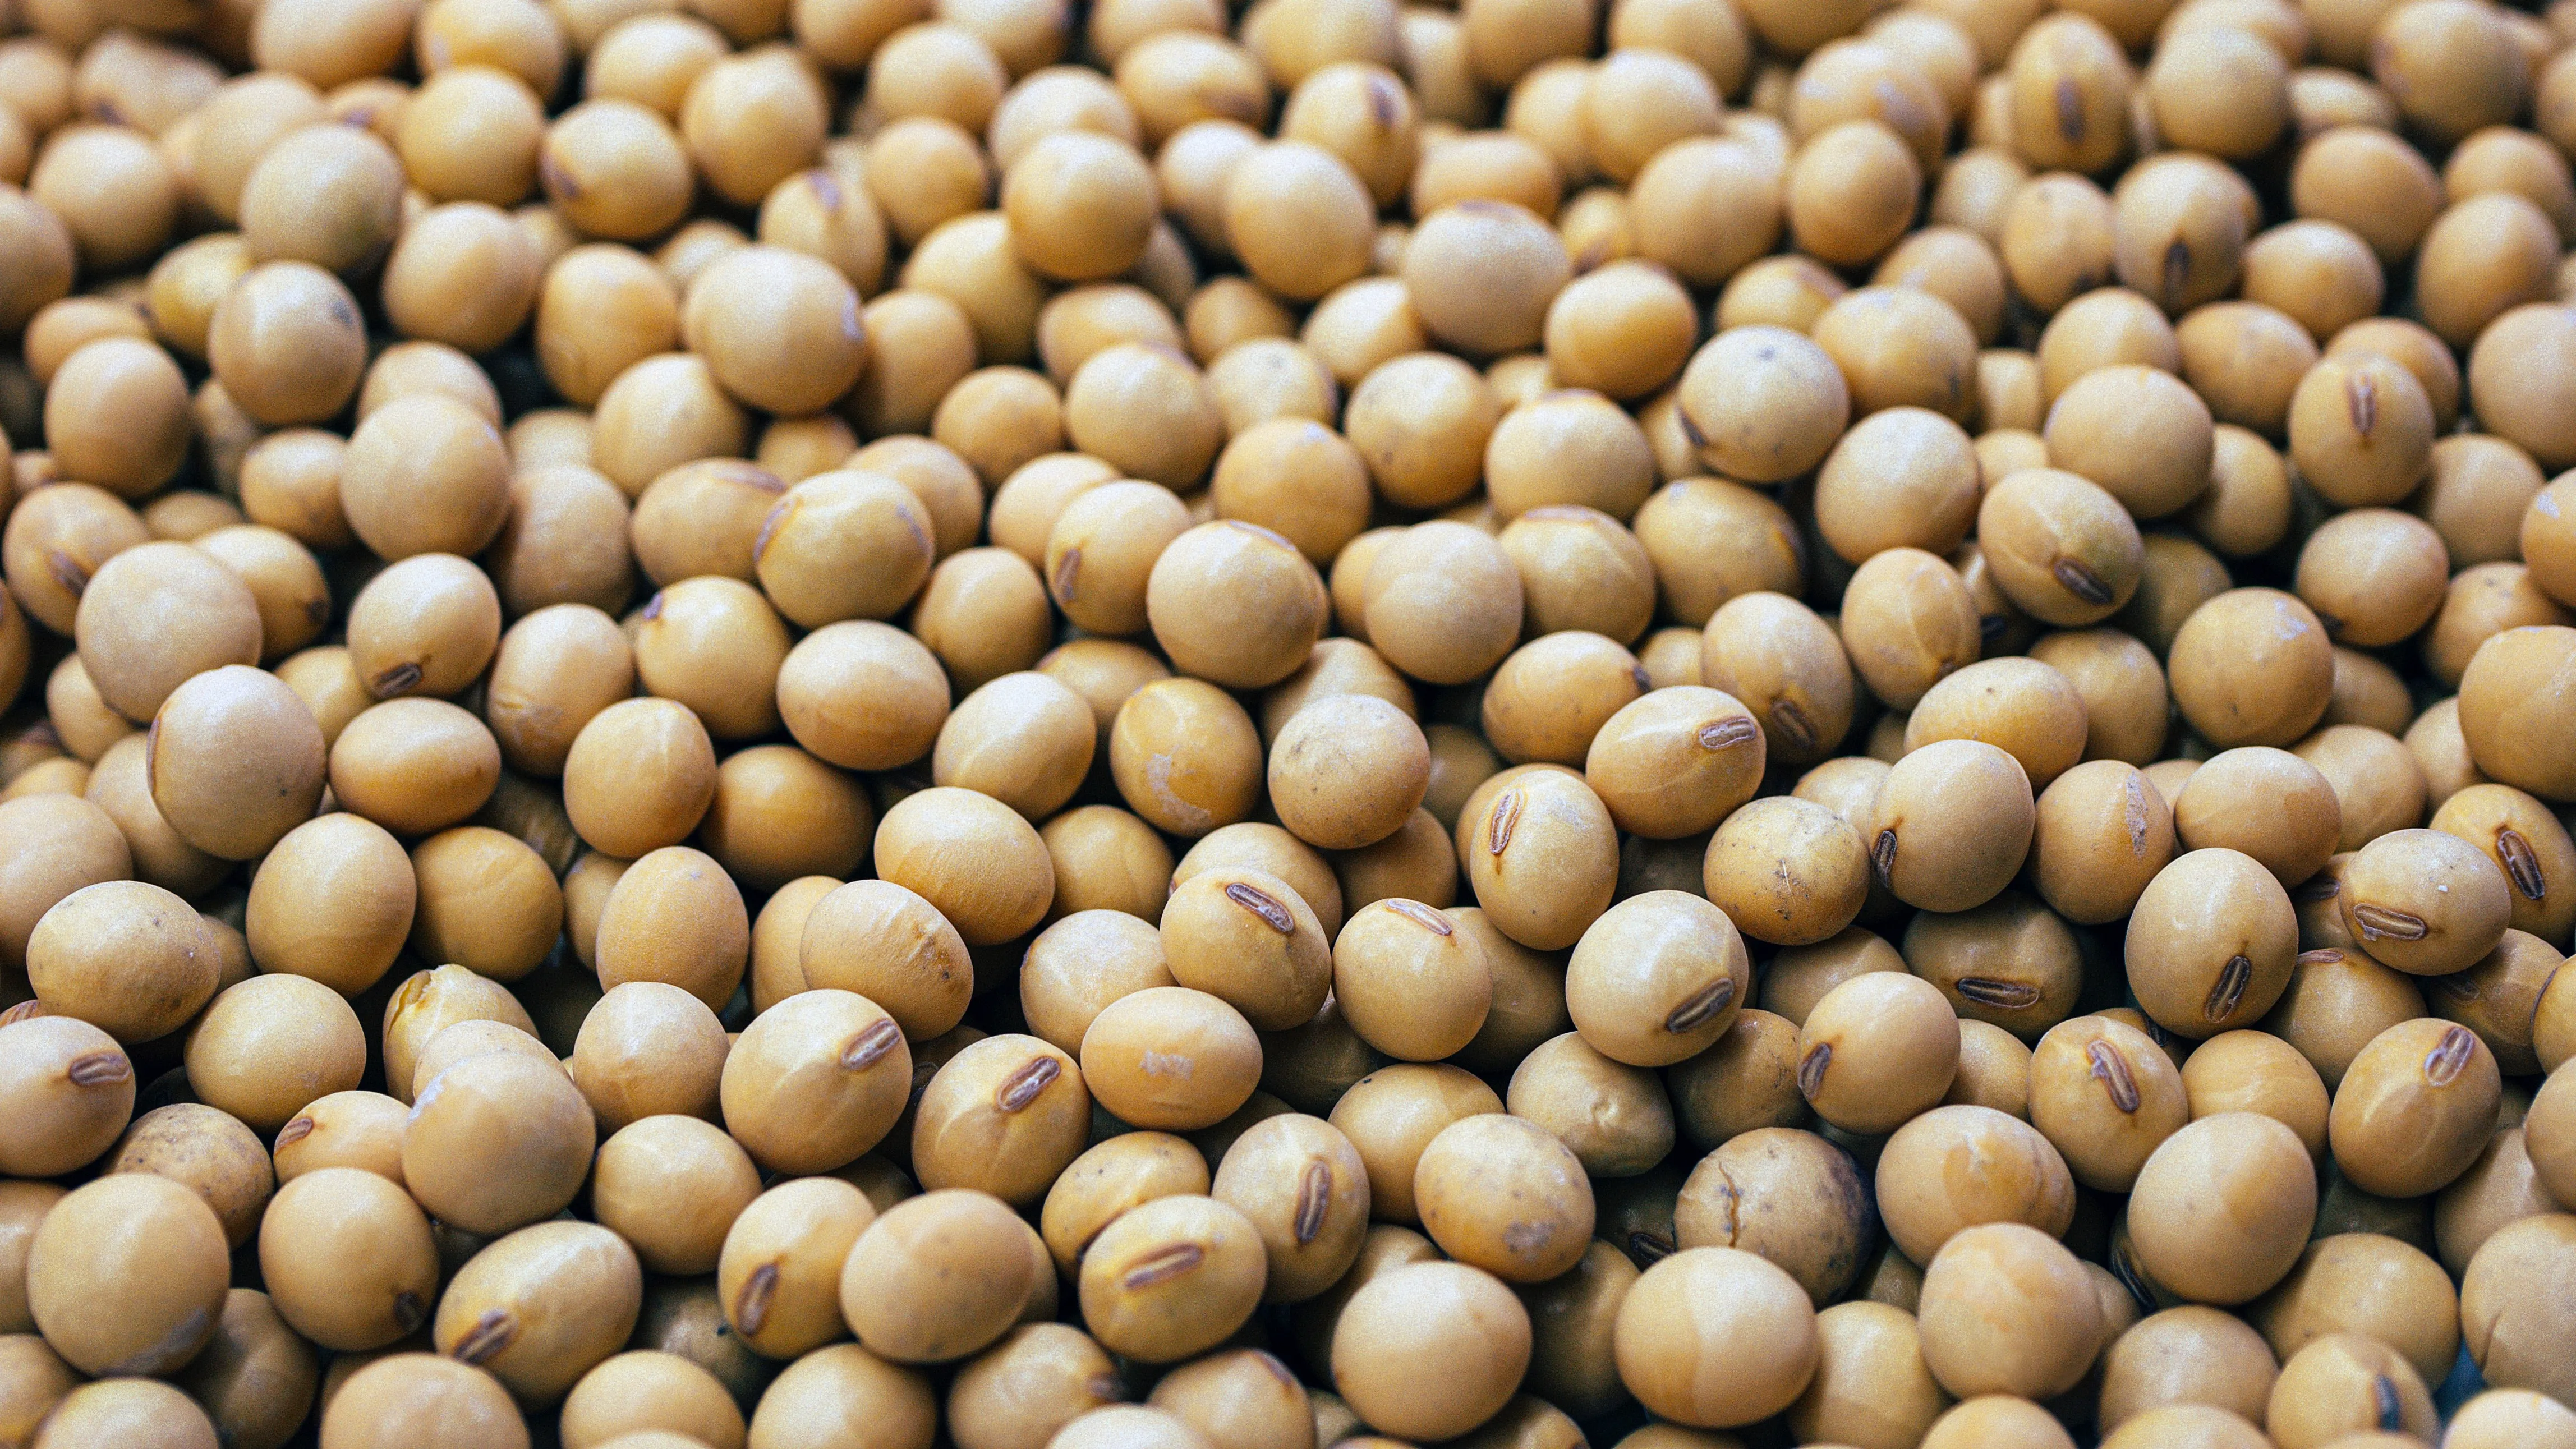 kacang kedelai mentah sumber protein murah